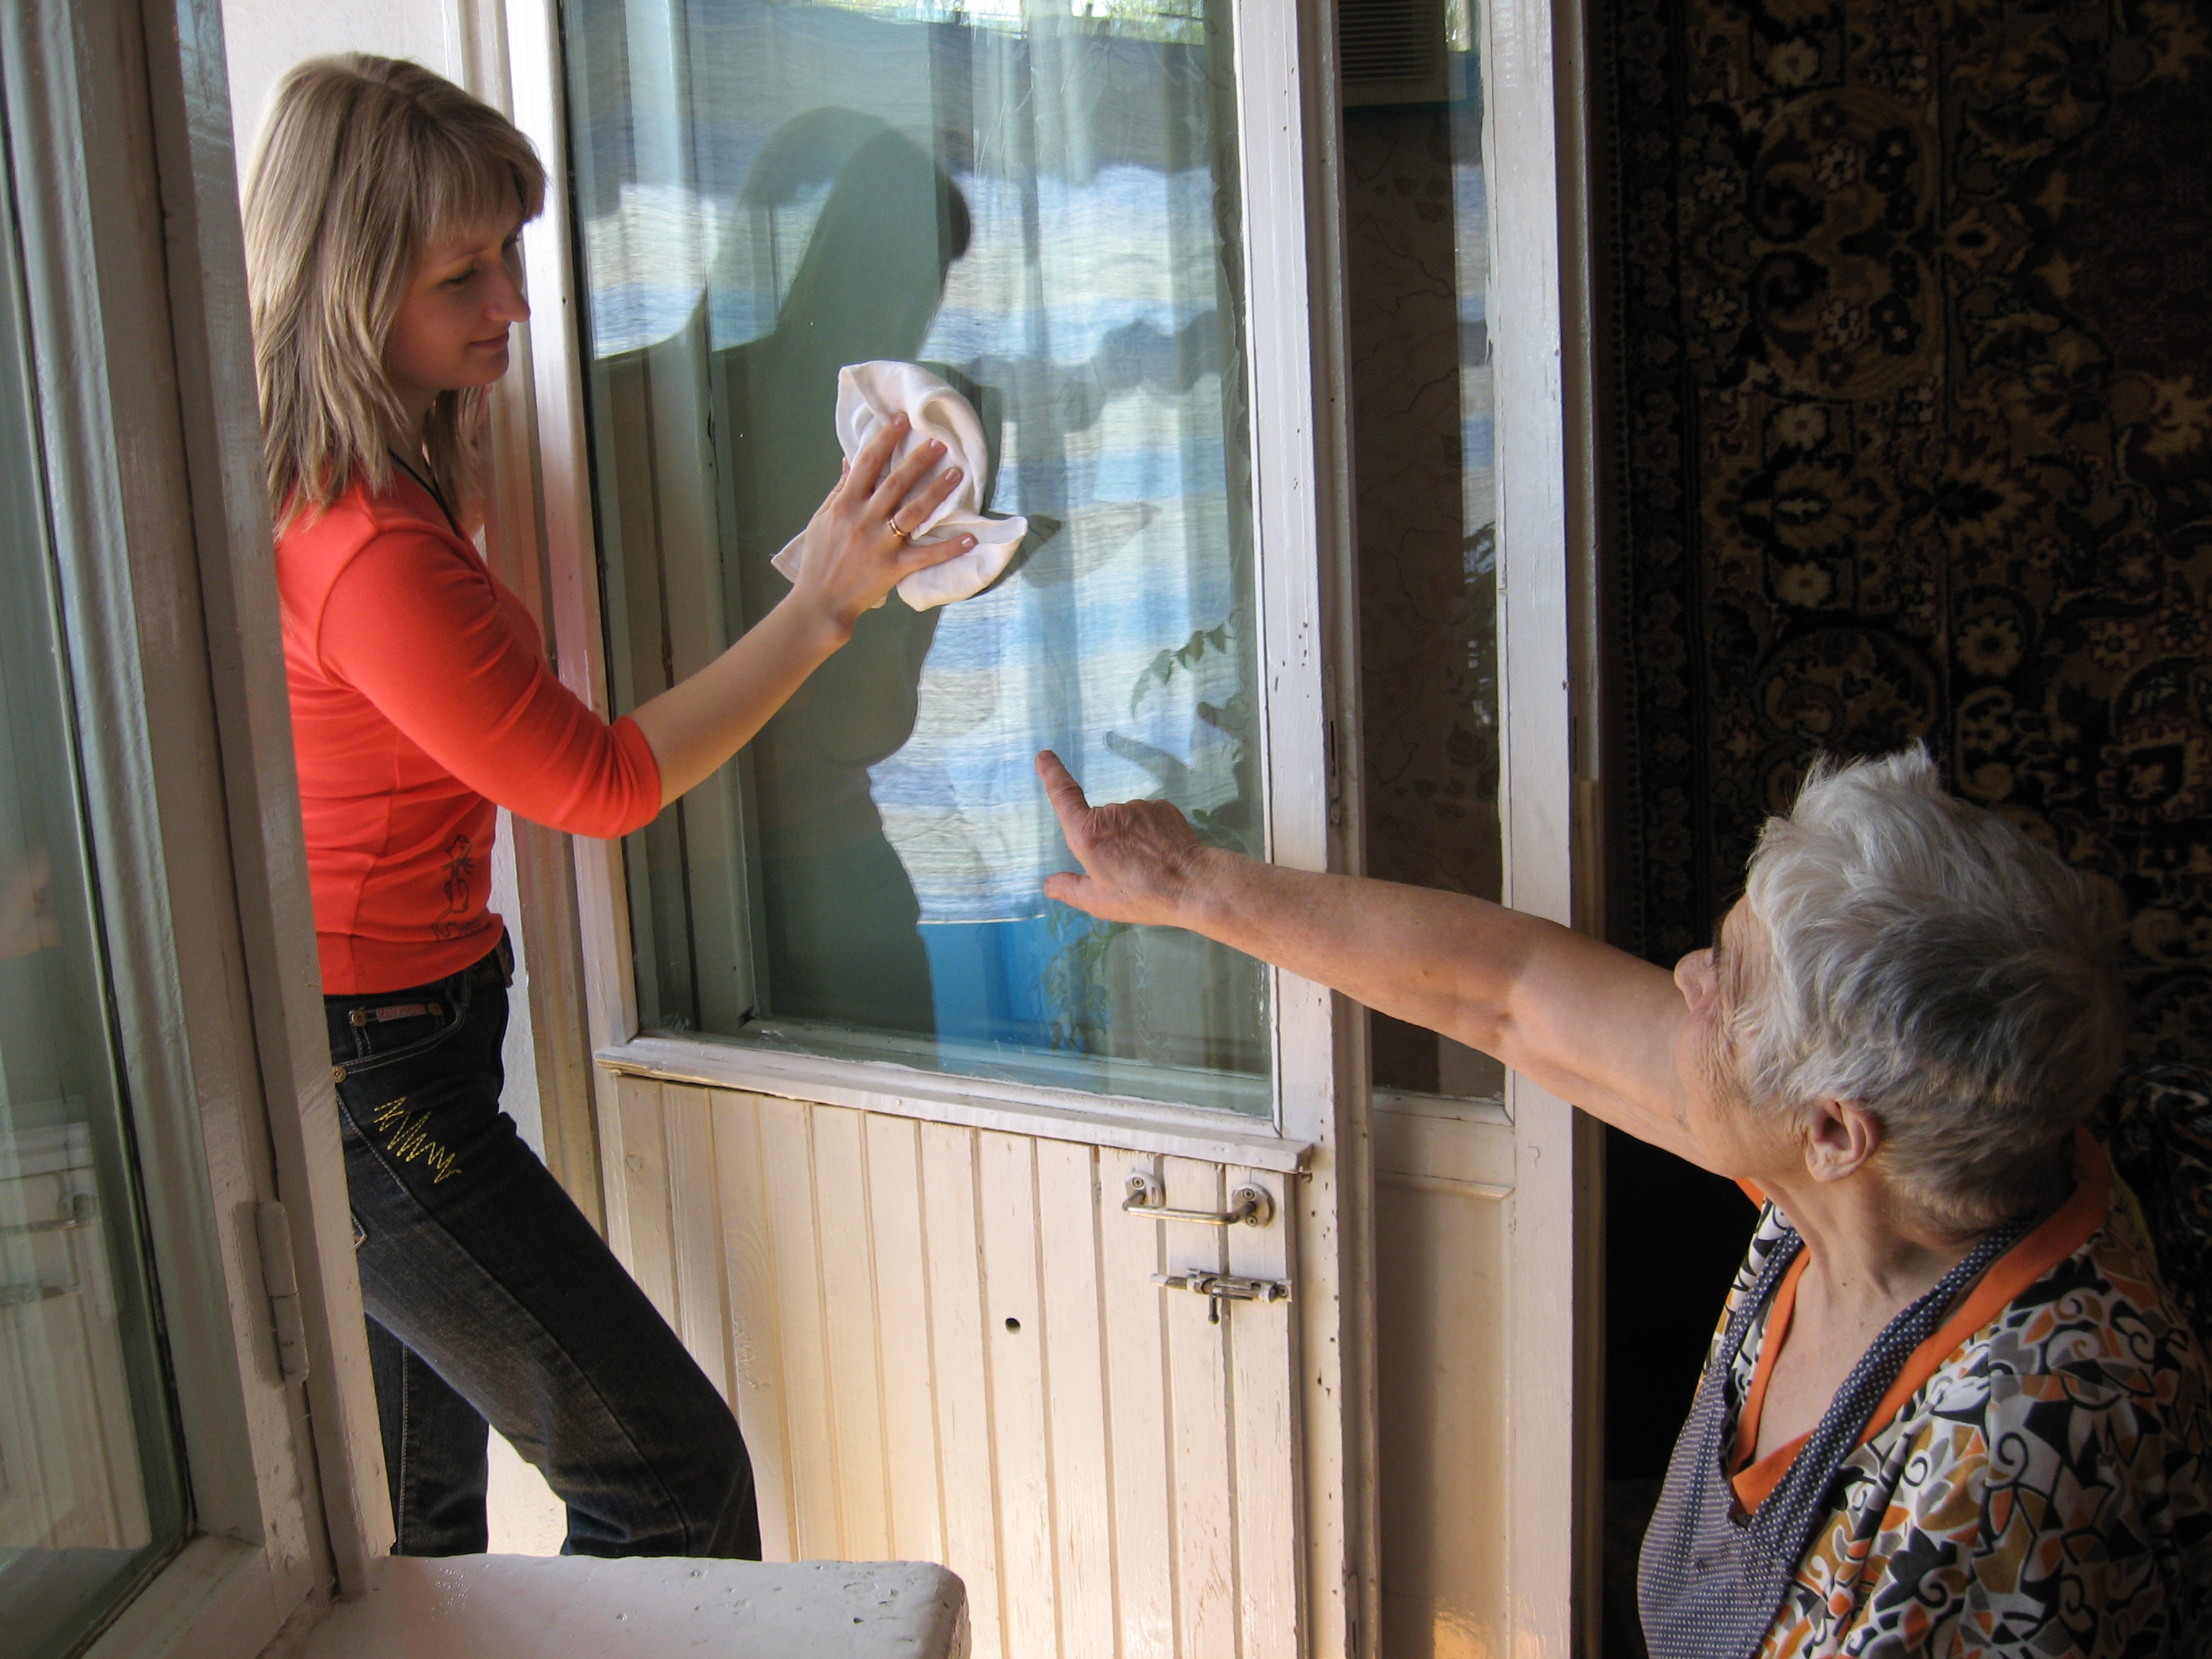 Окна тетка. Окна для пенсионеров. Квартира пенсионера. Дети помогают престарелым. Помогать пожилым людям.